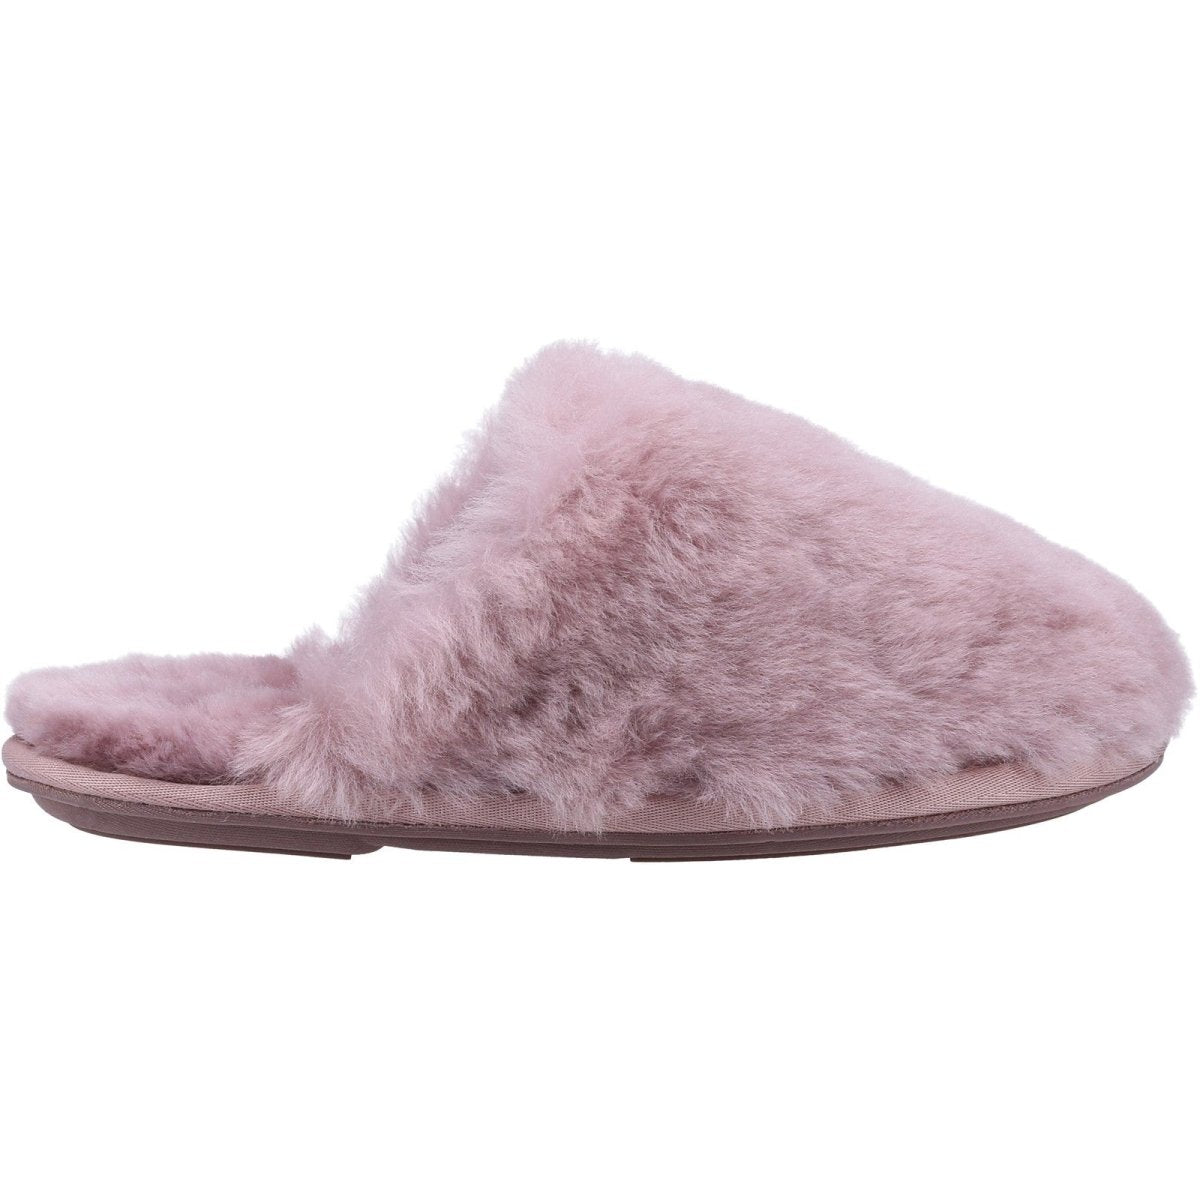 Cotswold Salperton Ladies Sheepskin Mule Slippers - Shoe Store Direct